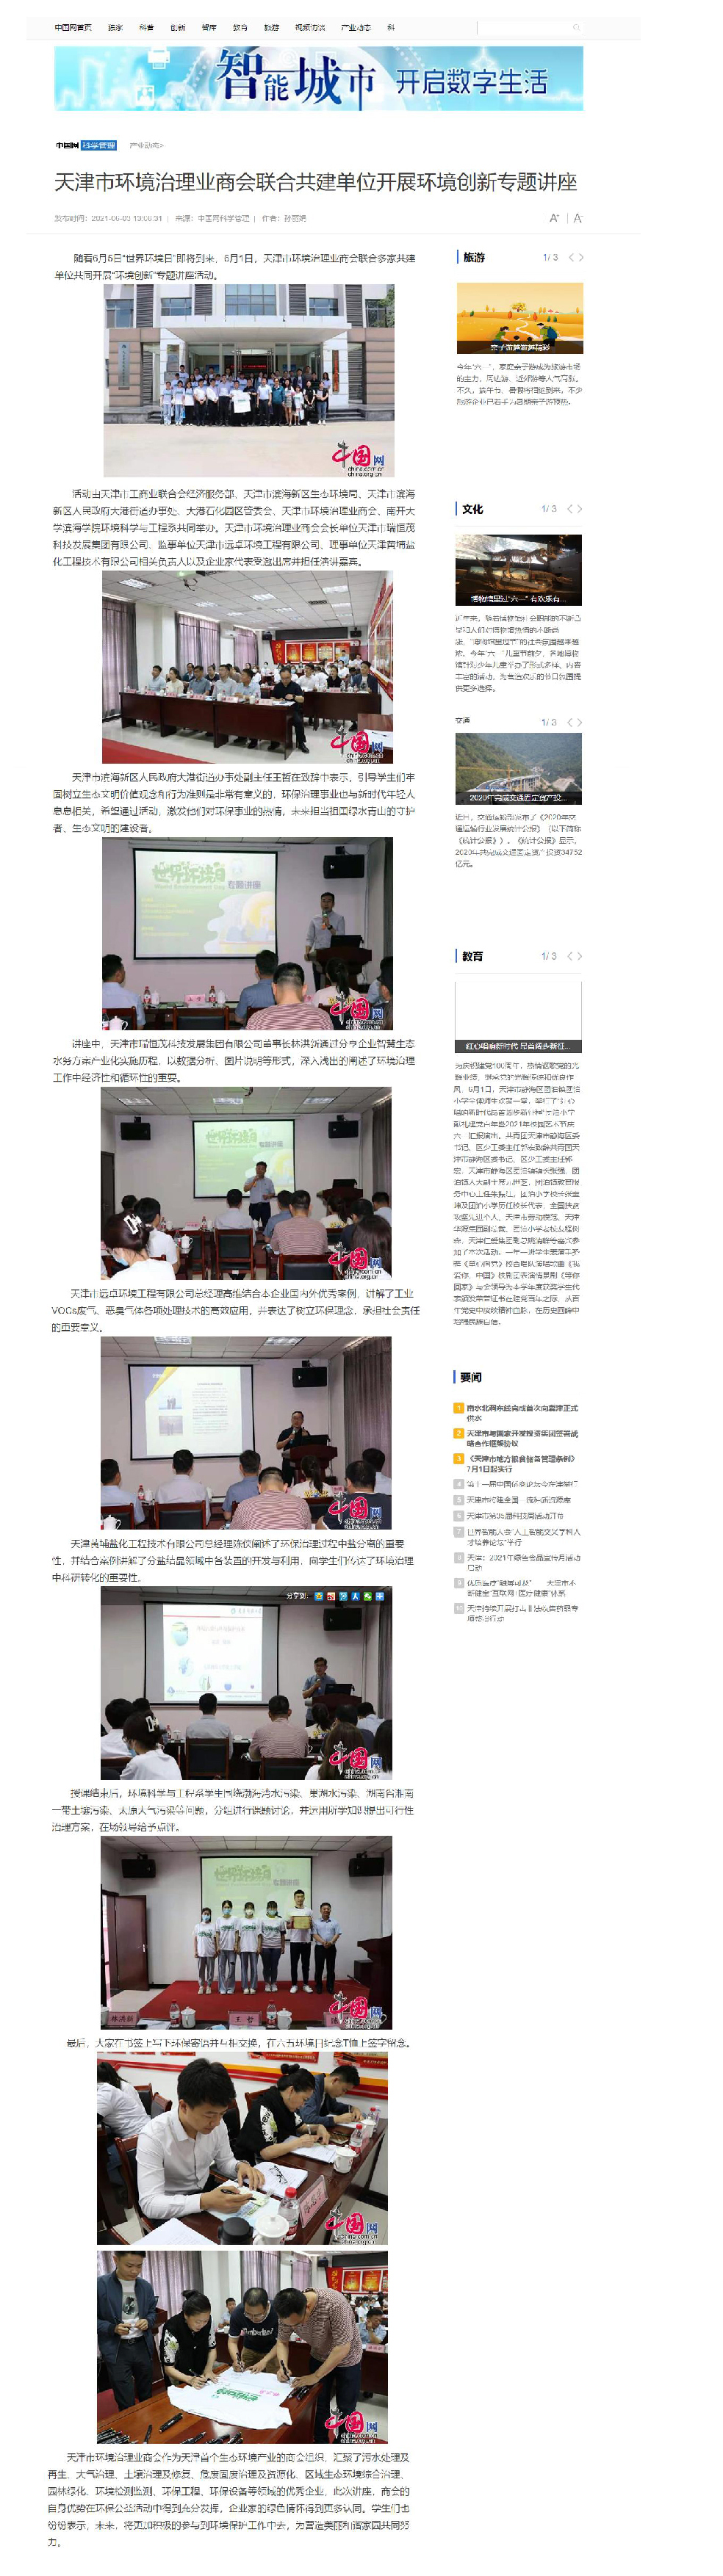 2021-06-03中国网环境日环境创新讲座.jpg